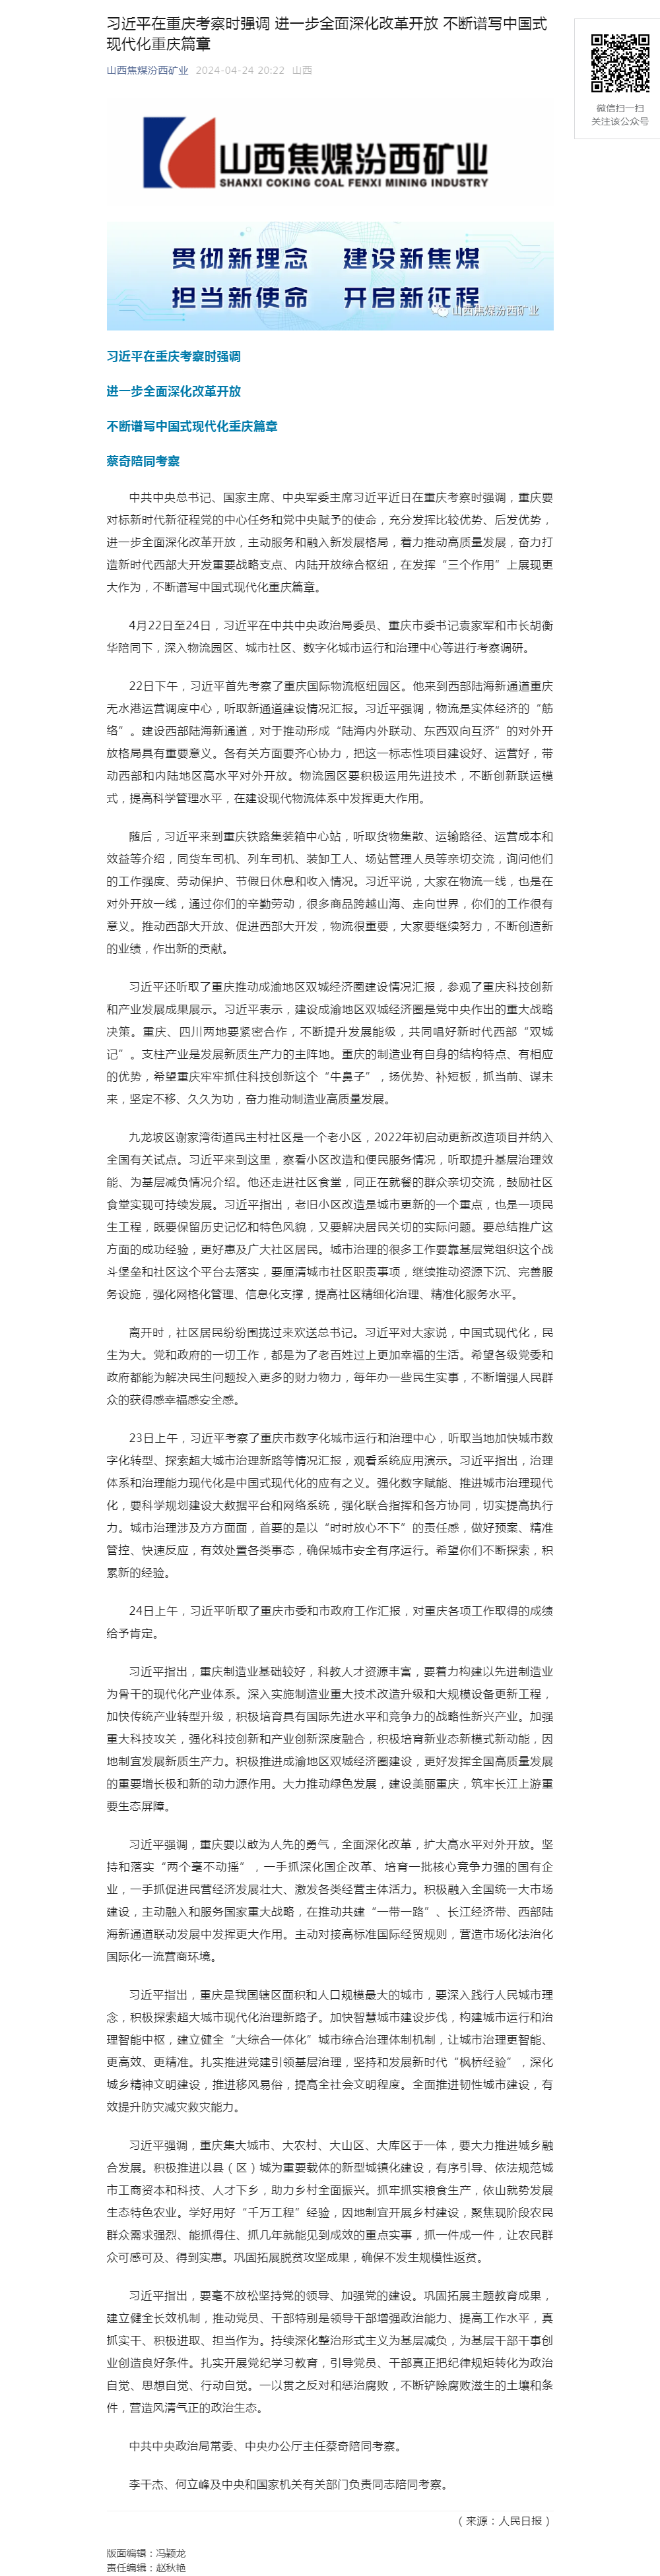 习近平在重庆考察时强调 进一步全面深化改革开放 不断谱写中国式现代化重庆篇章.png